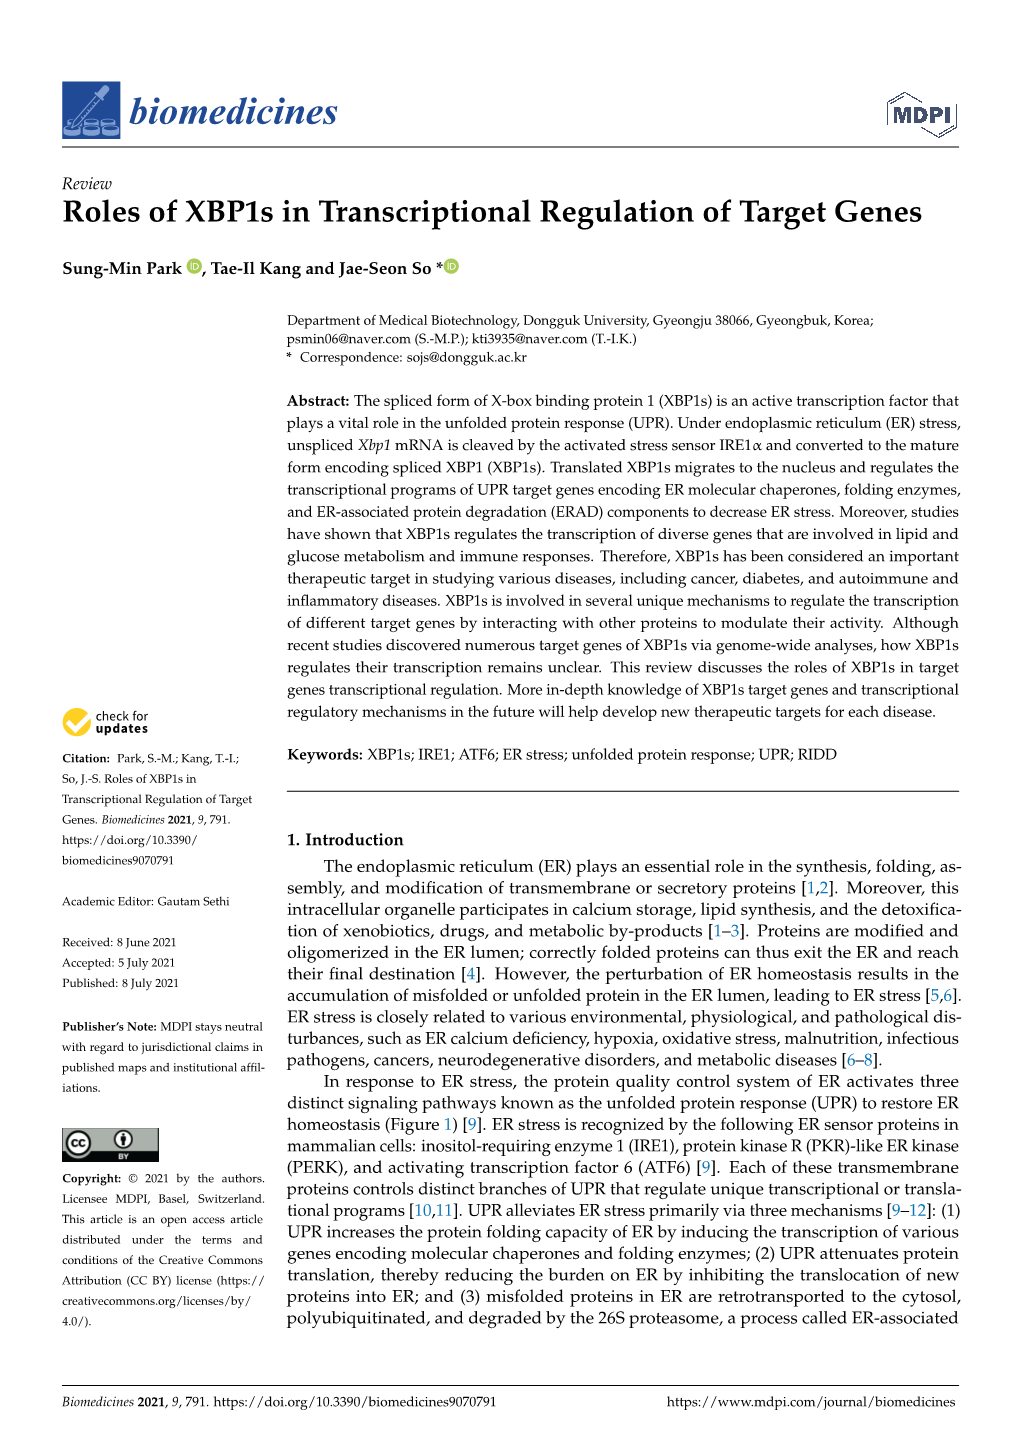 Roles of Xbp1s in Transcriptional Regulation of Target Genes